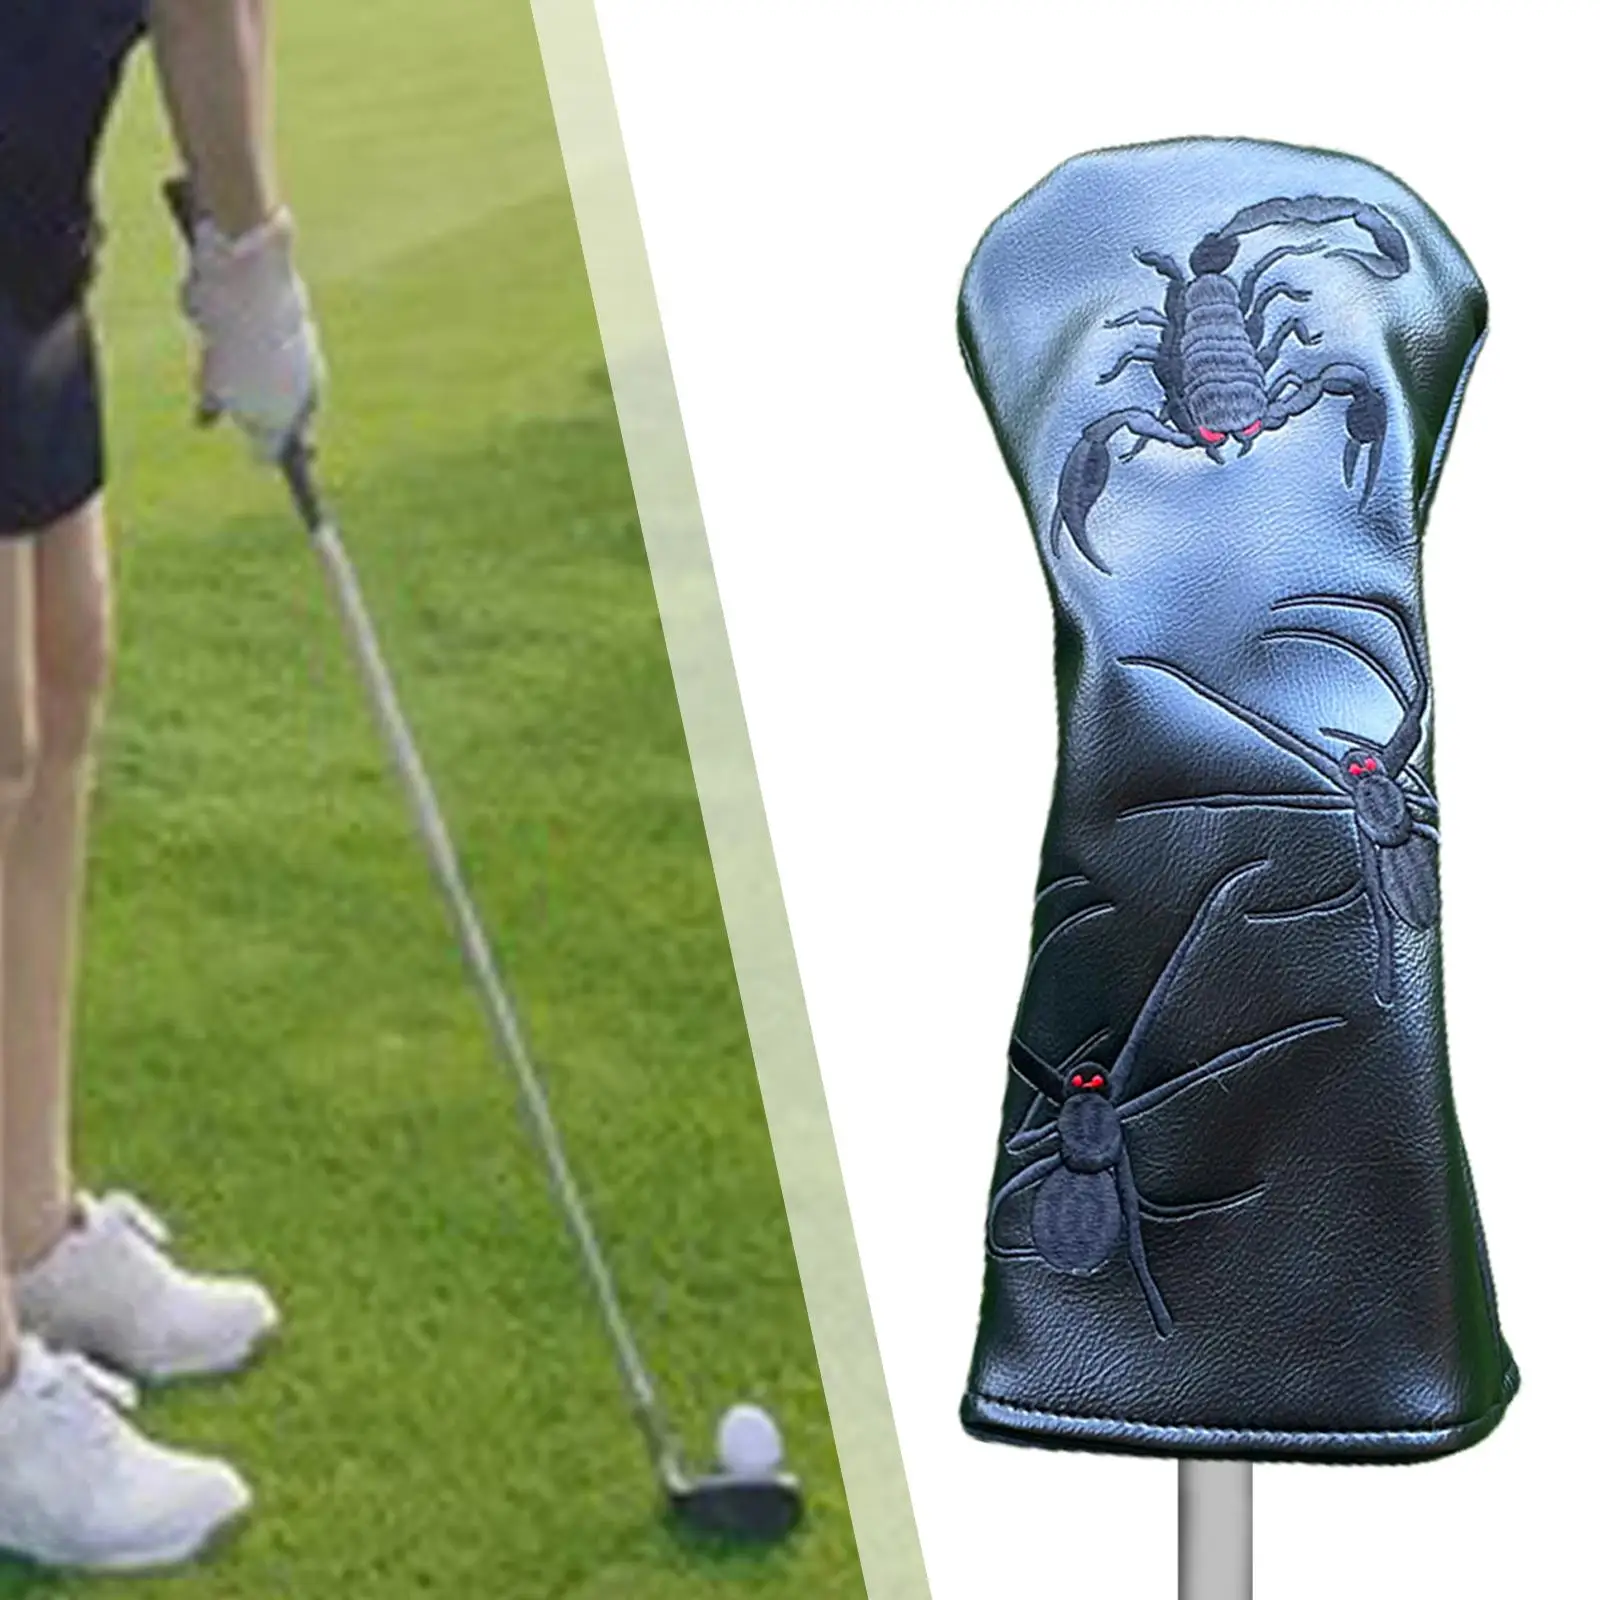 Головной убор для клюшки для гольфа, защитный рукав с защитой от царапин, подарок гольфисту на флисовой подкладке